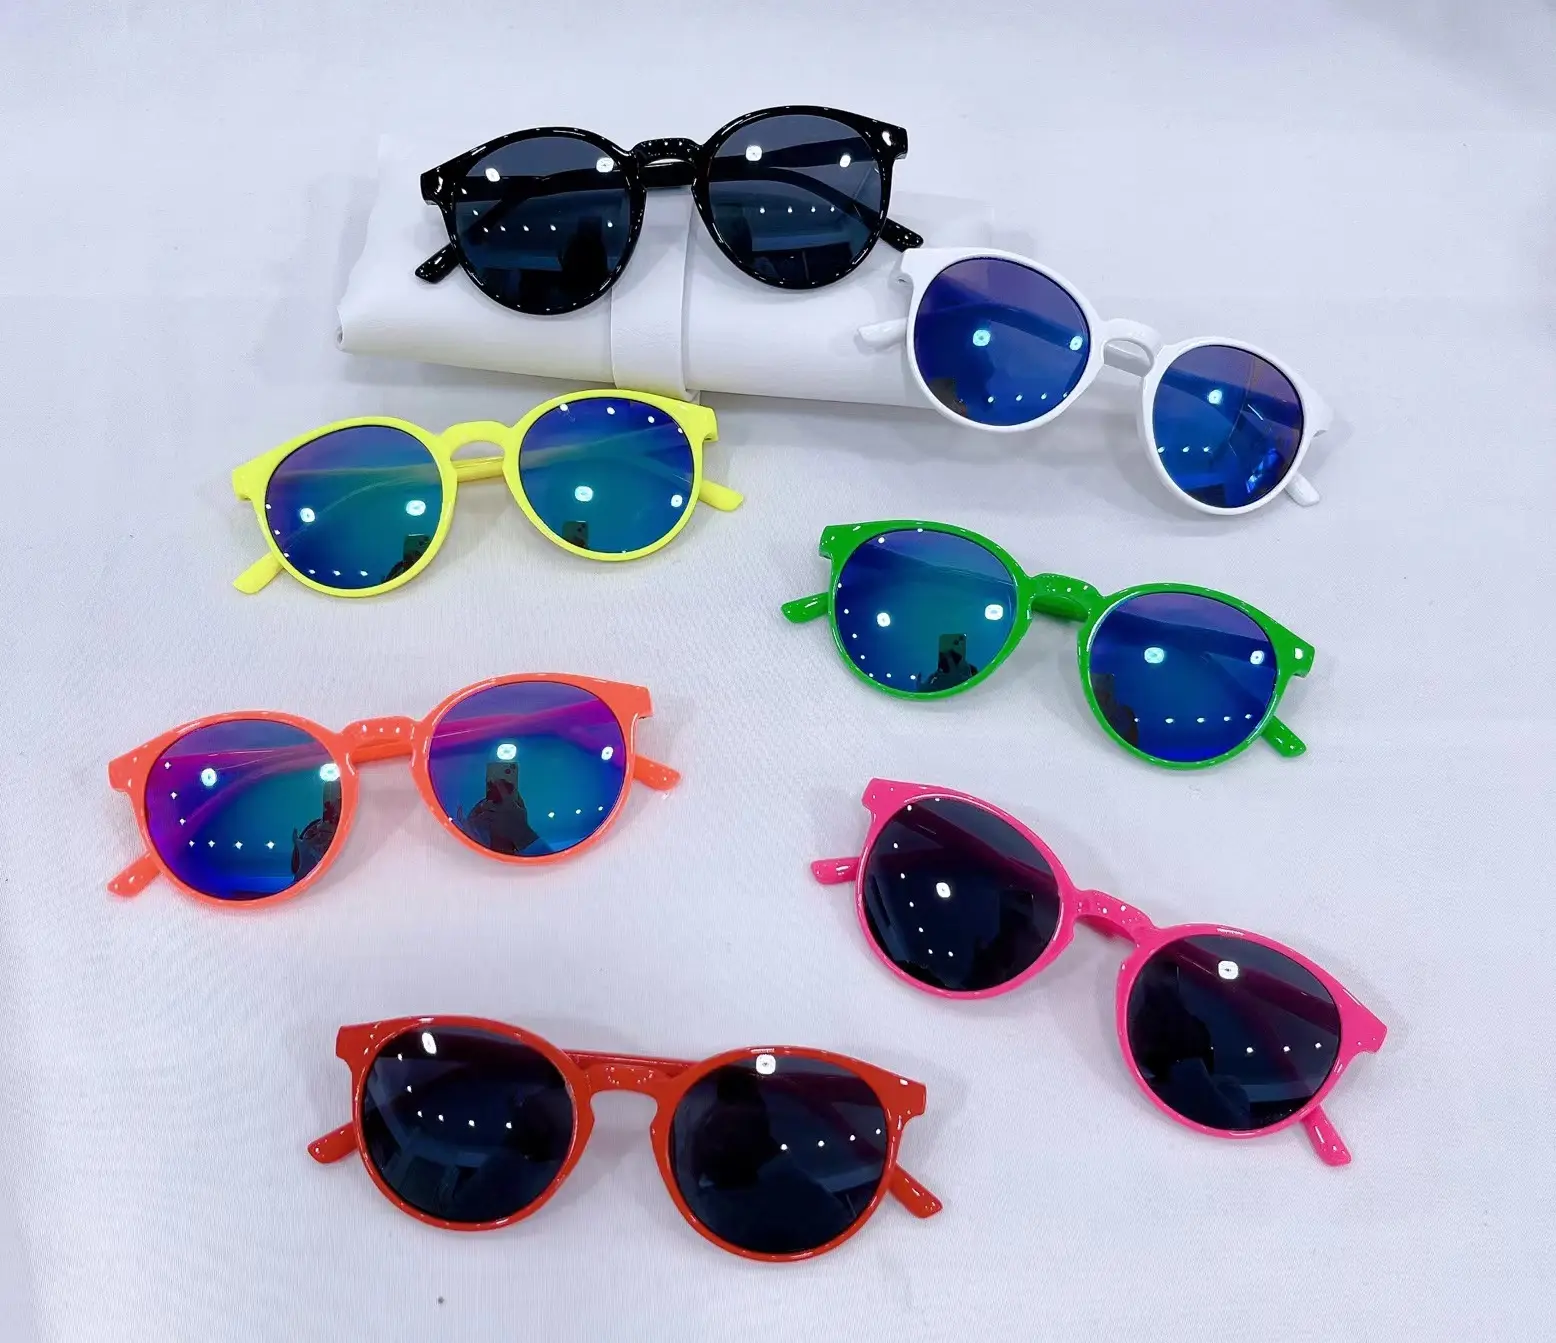 फ़ैक्टरी थोक बच्चों के धूप का चश्मा लड़कियों और लड़कों के लिए फैशनेबल रंगीन गोल डिज़ाइन